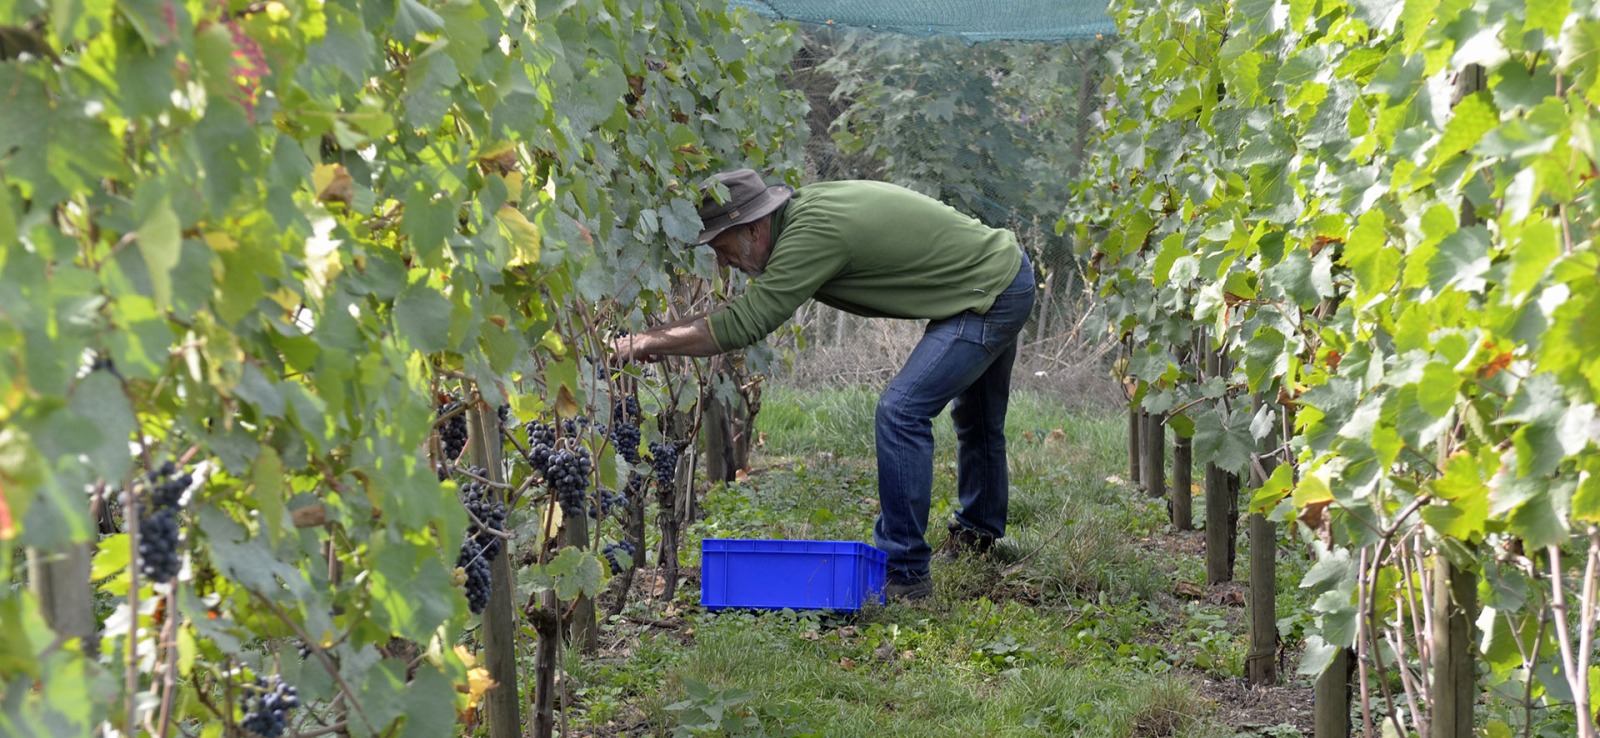 Jean Galler pflückt Trauben in seinem Weinberg in Chaudfontaine - Weinberg Septem Triones - Belgischer Bioweinproduzent